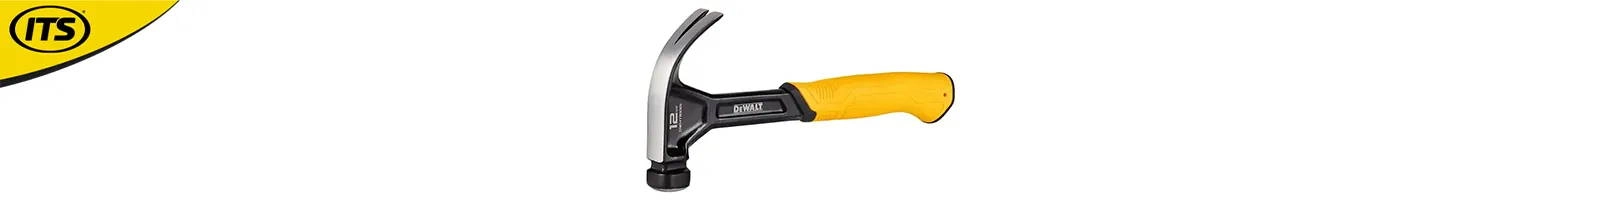 Dewalt DWHT51001 Curved Claw Hammer